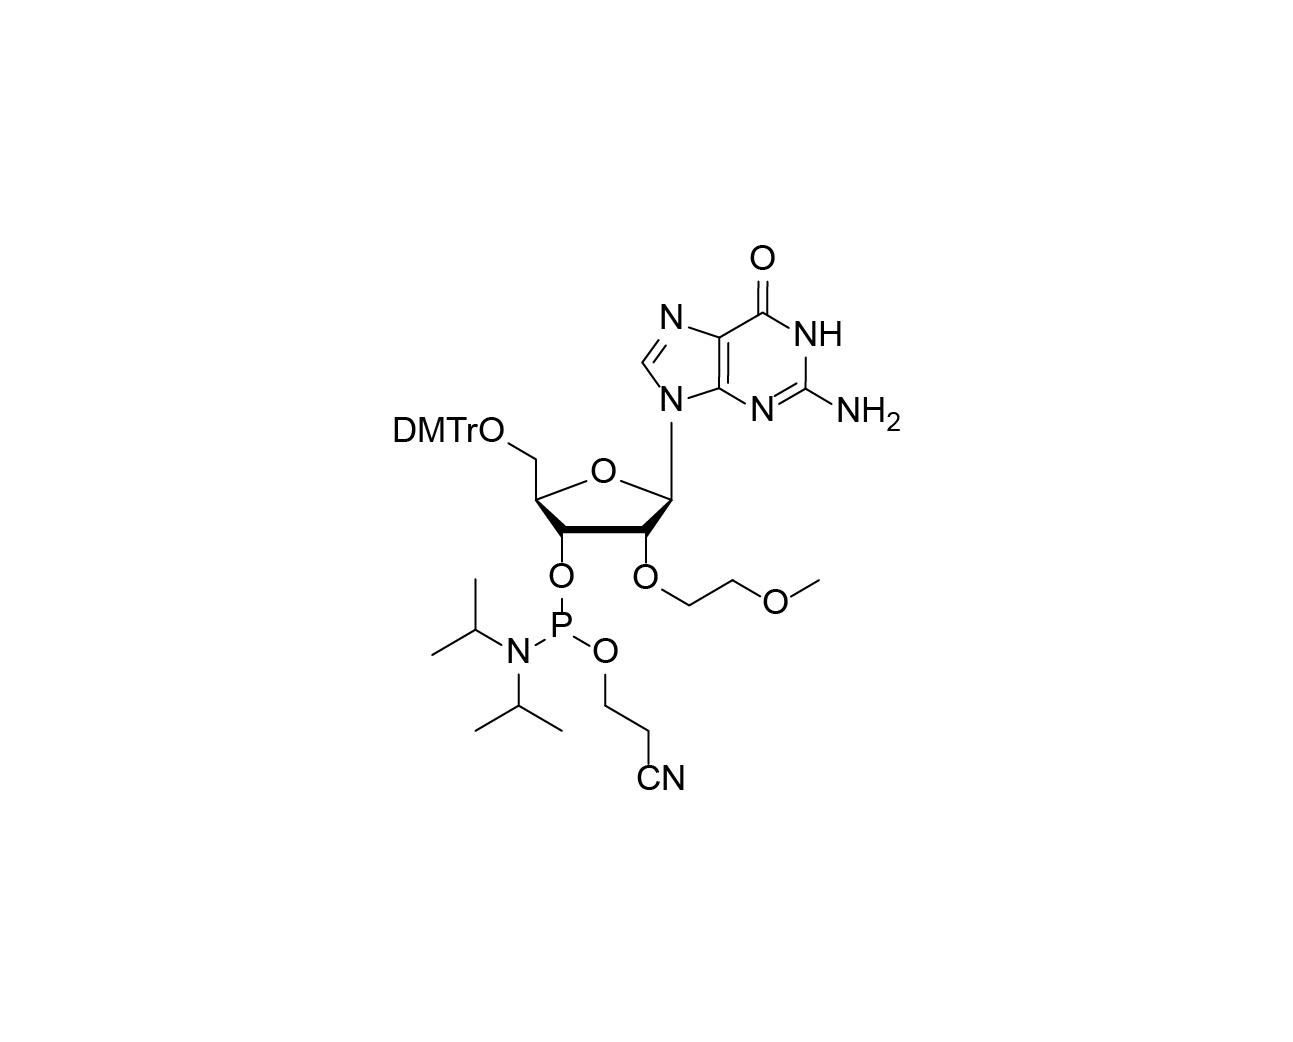 DMTr-2'-O-MOE-rG-3'-CE-Phosphoramidite